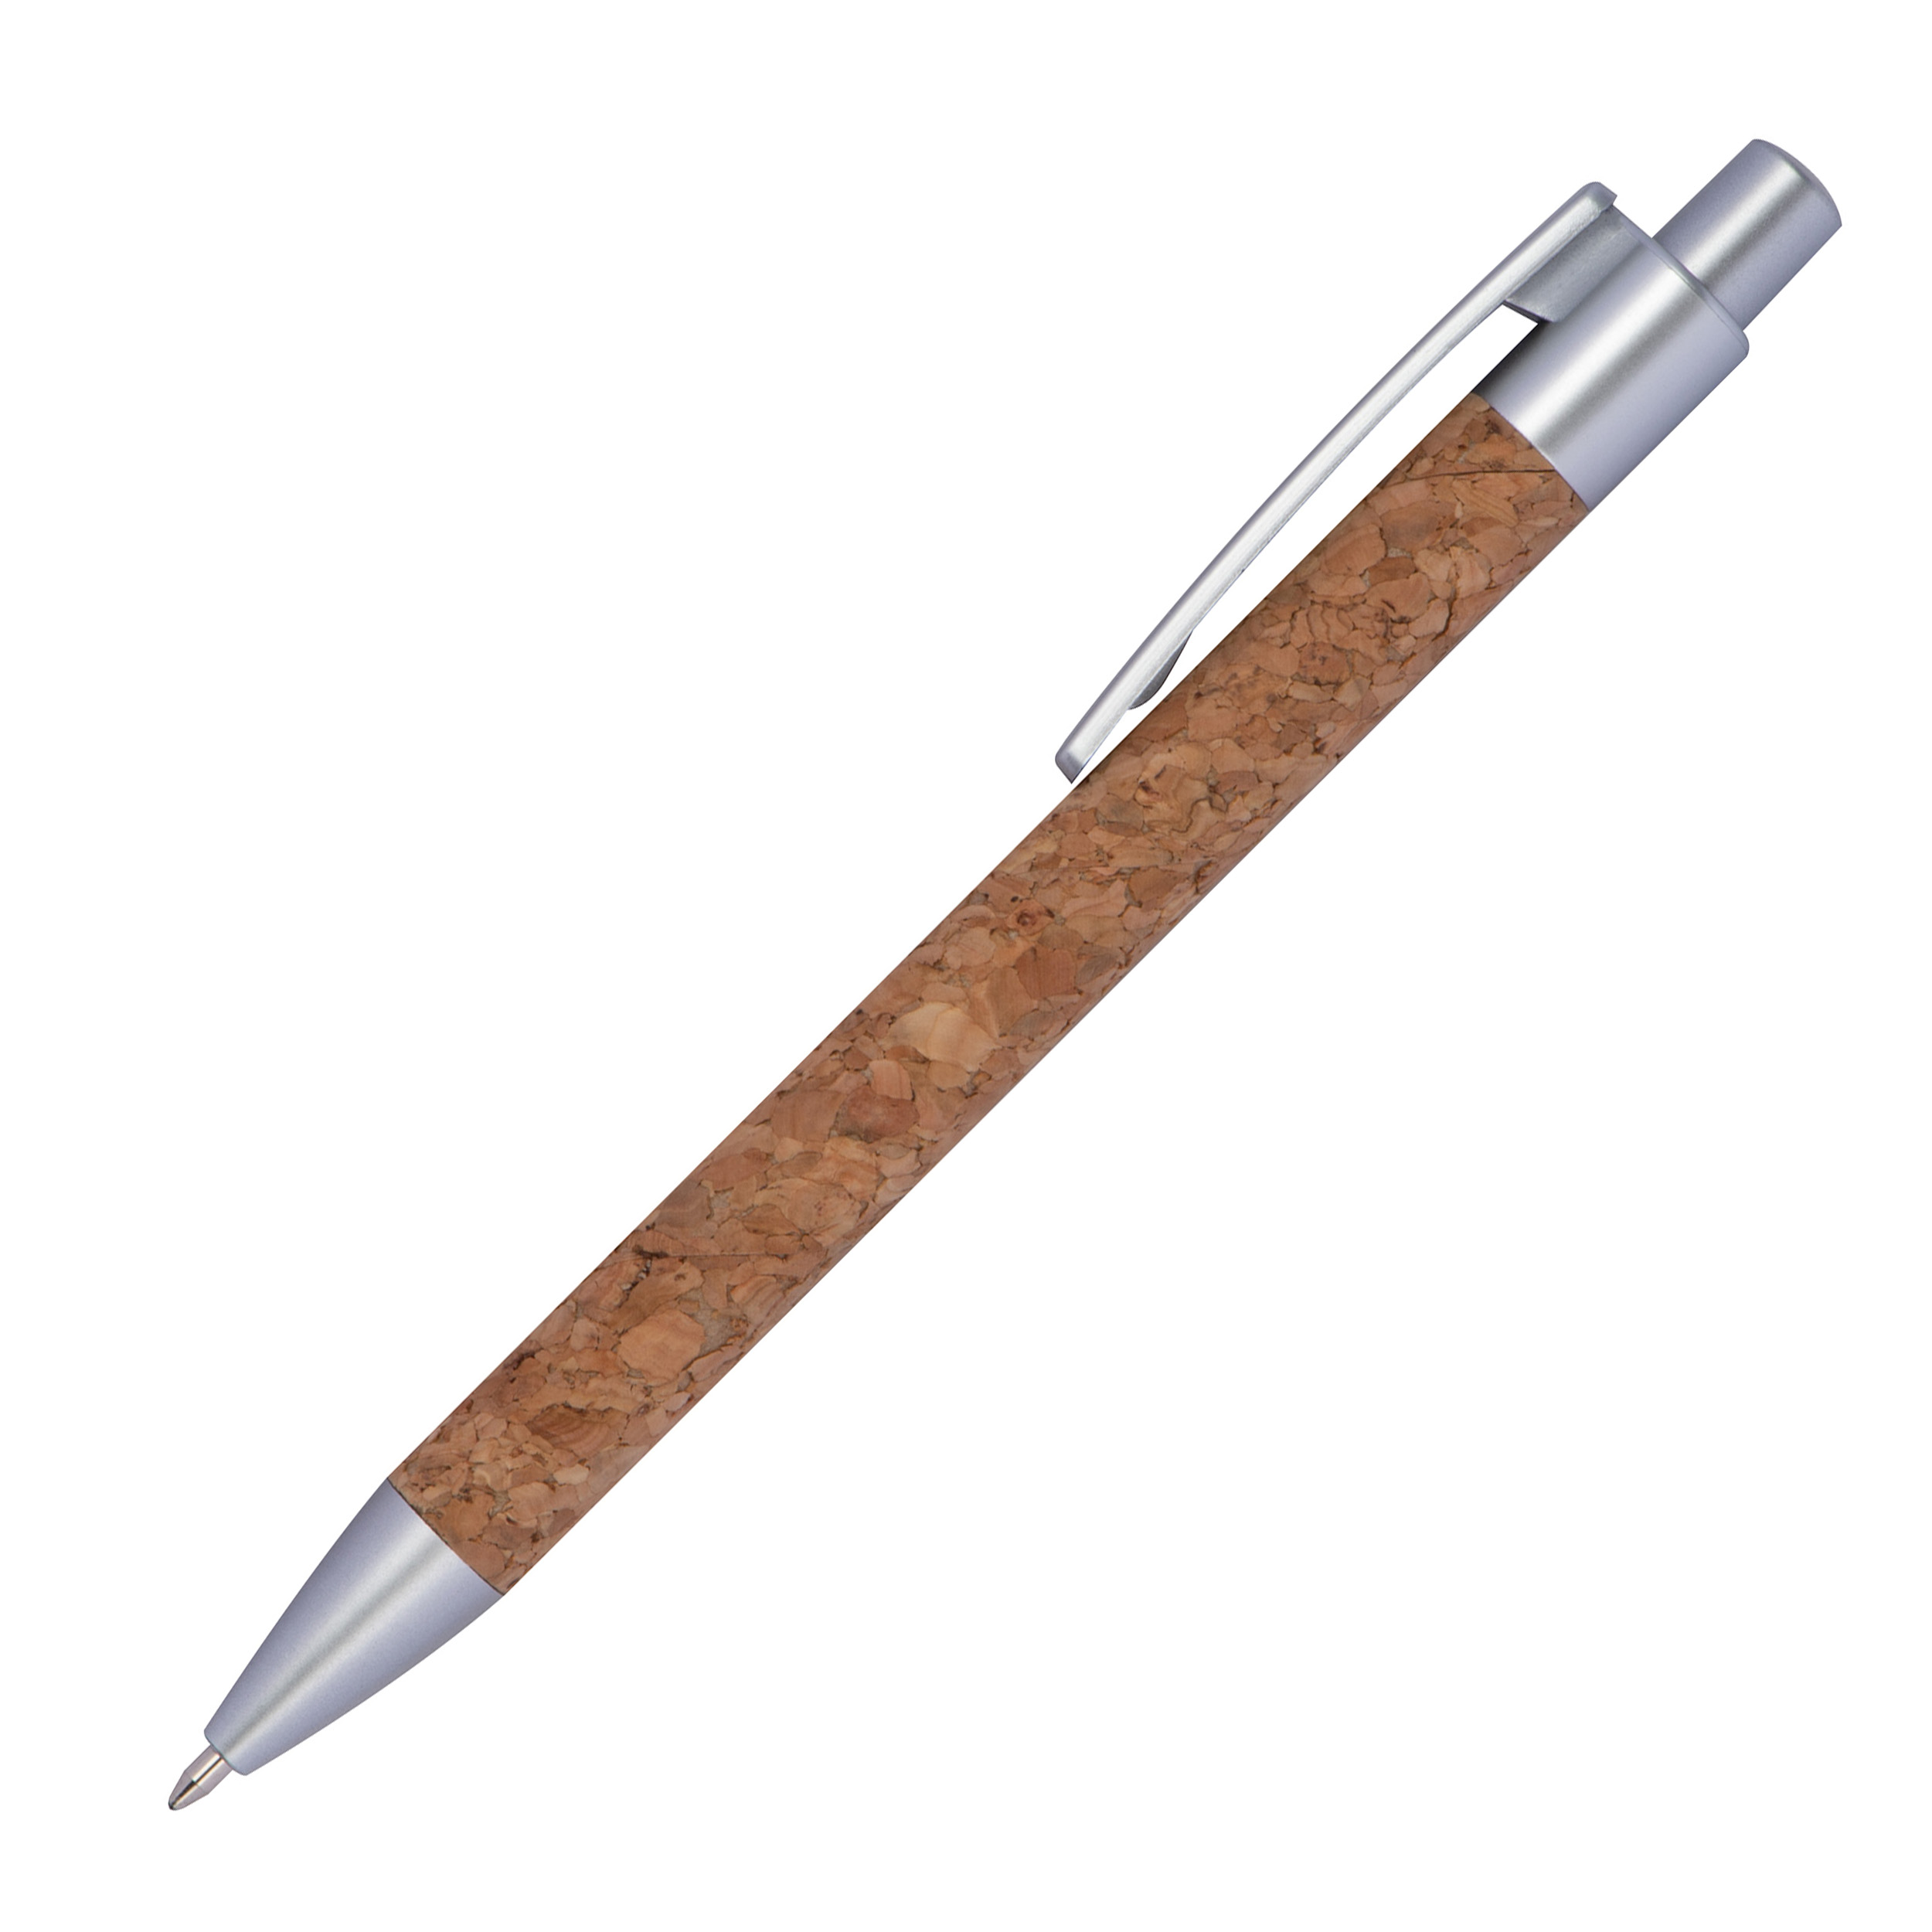 Kugelschreiber aus Kork